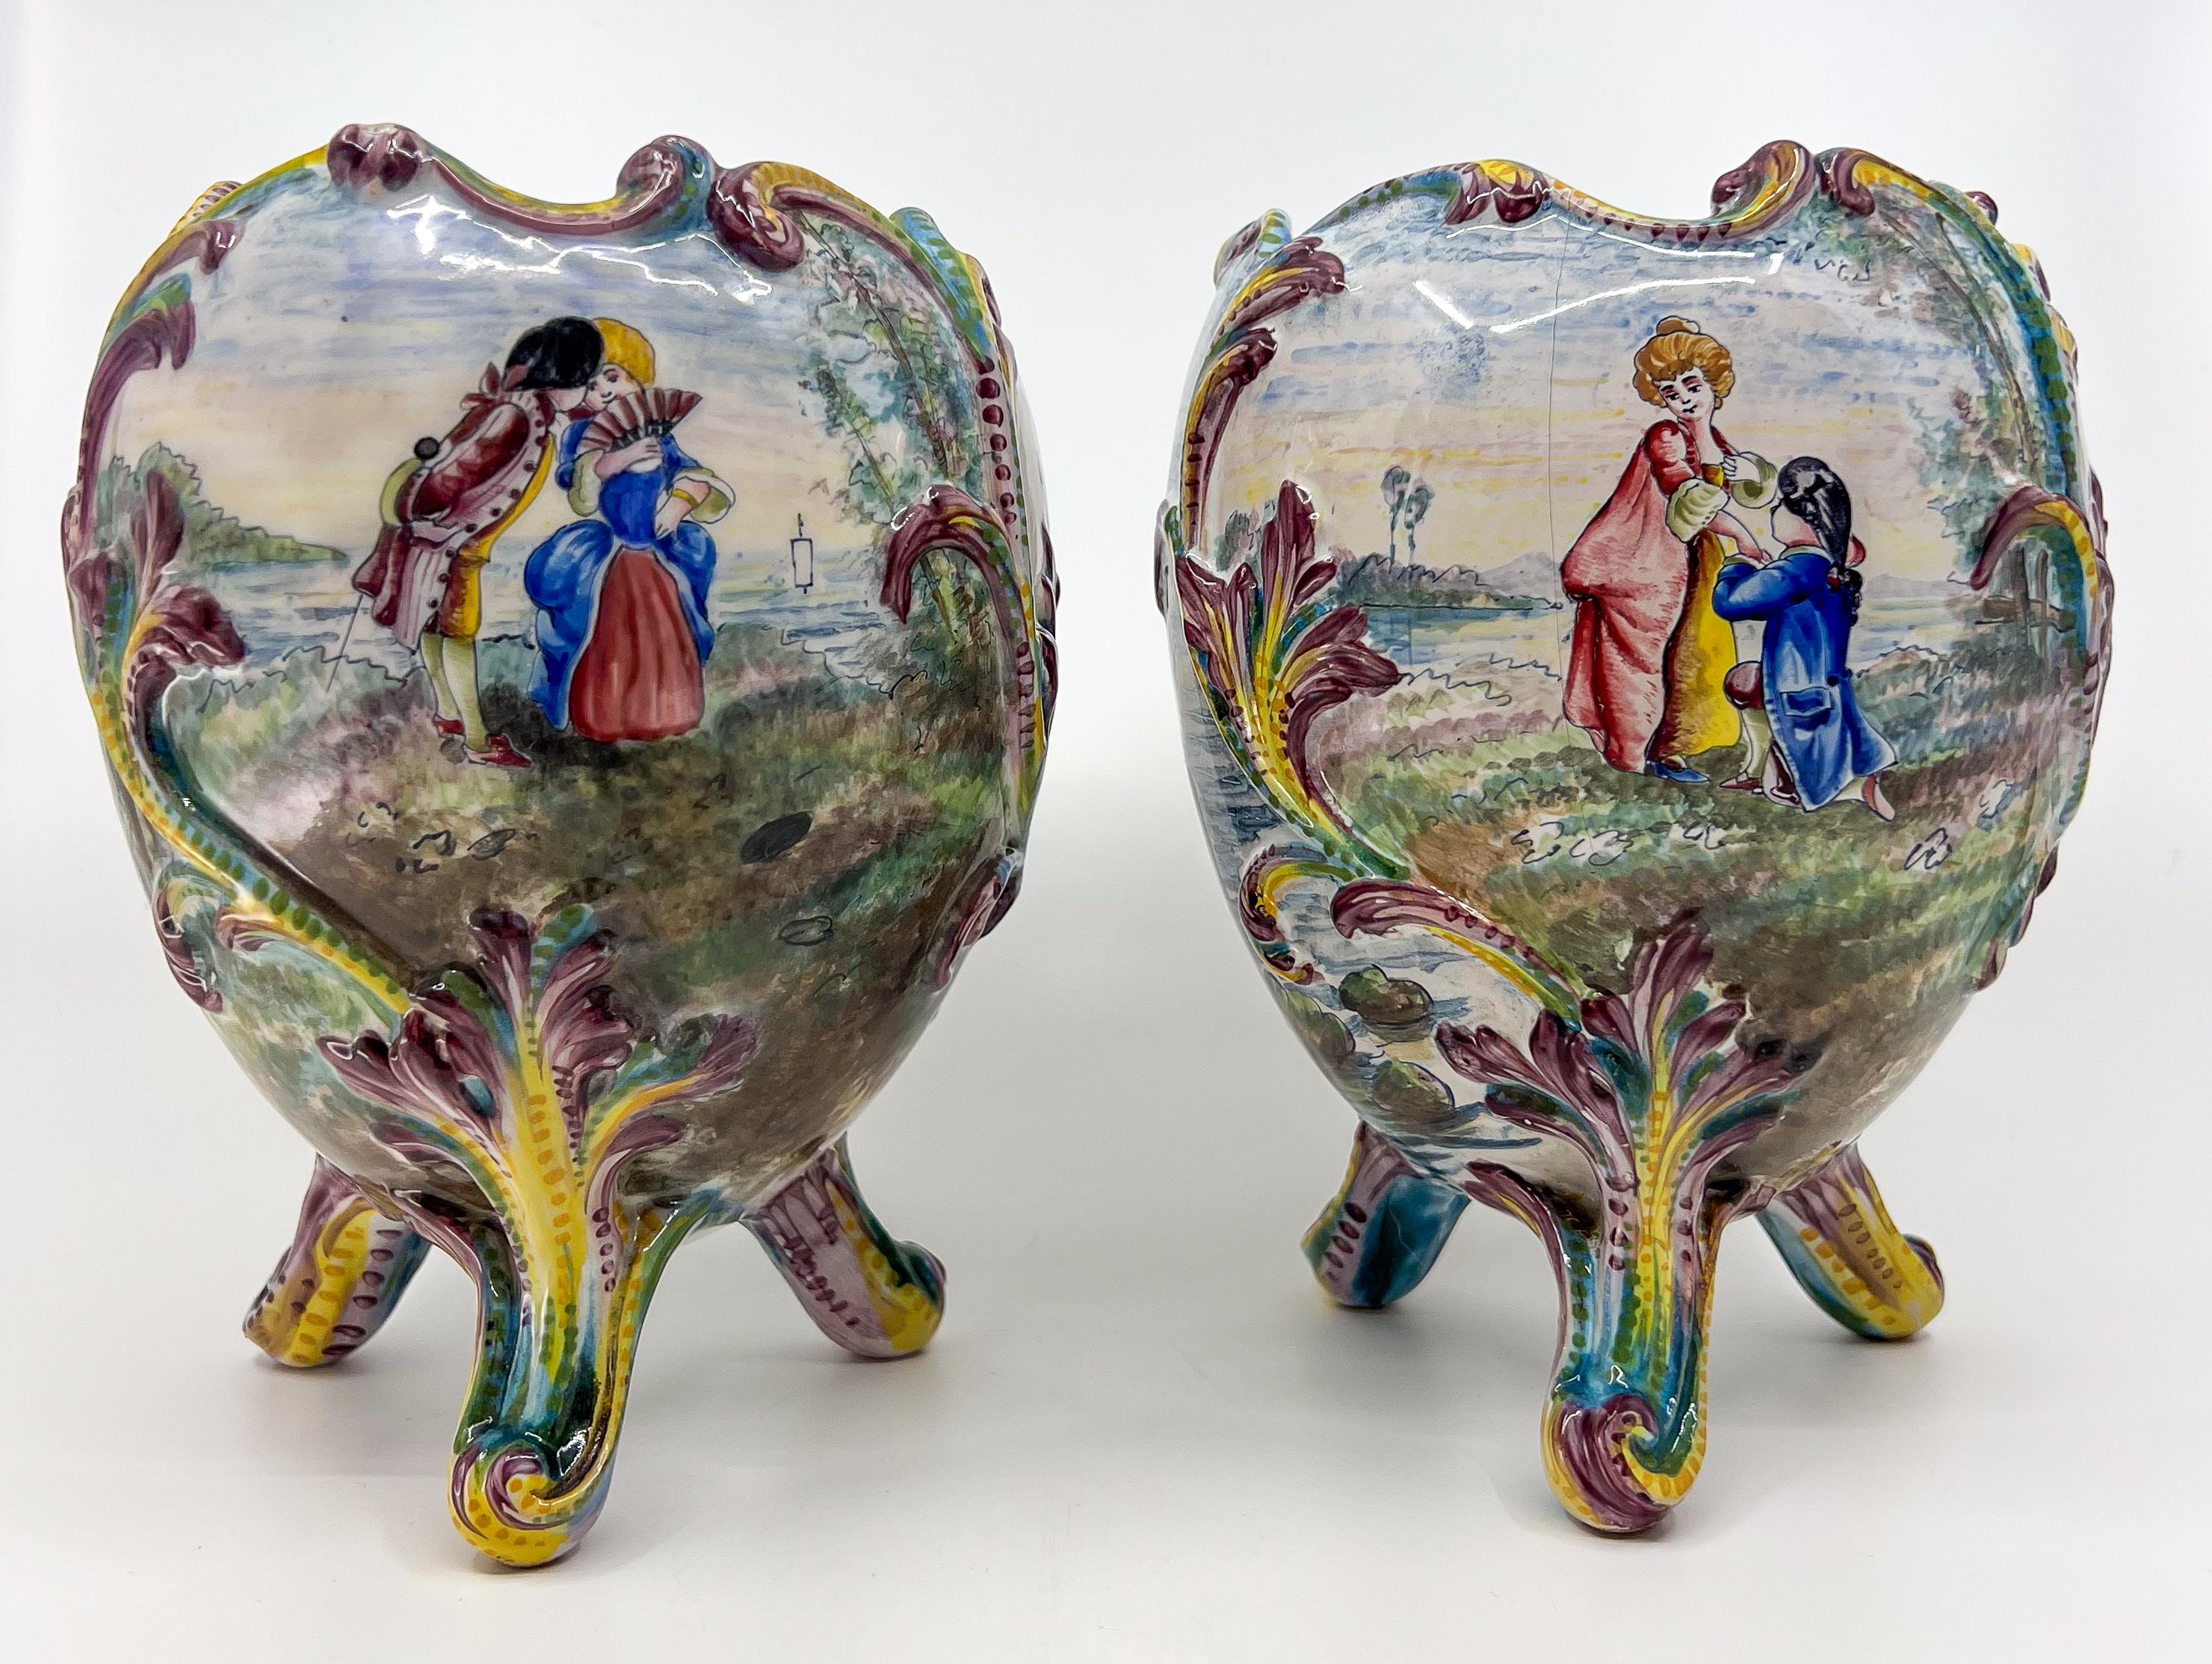 Paire de vases ou jardinières en porcelaine peints à la main à la Belle Epoque avec des scènes romantiques, des bateaux et des fleurs.

